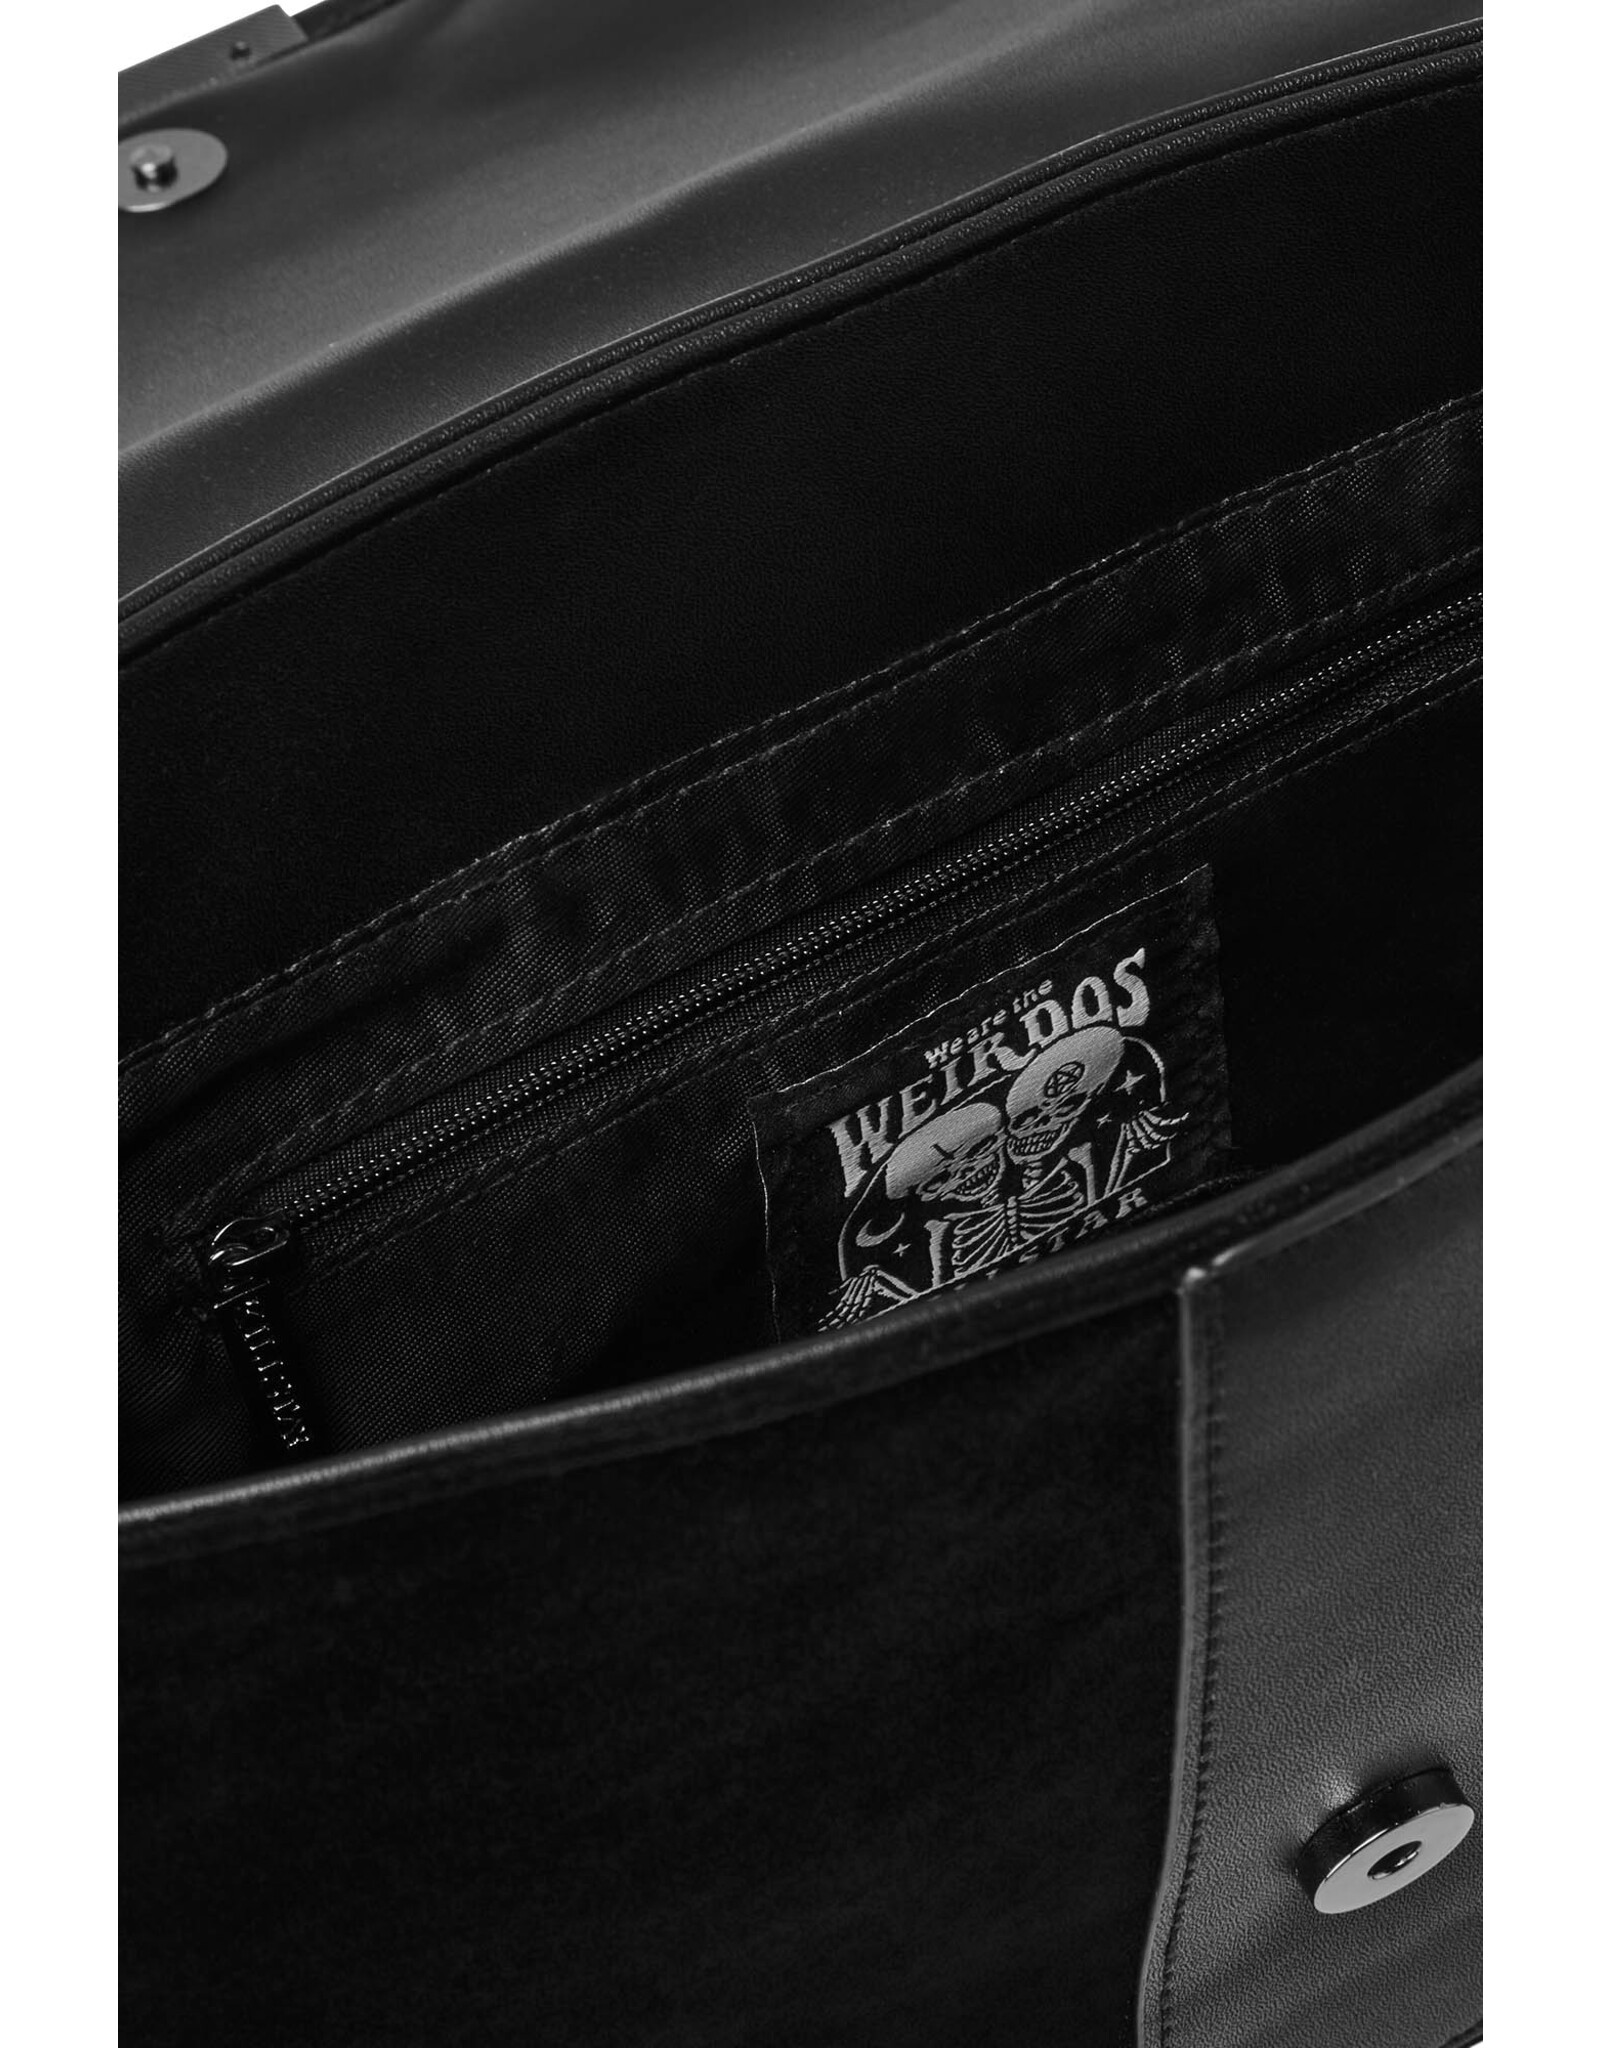 Killstar Killstar bags and accessories - Killstar Moonlight handbag